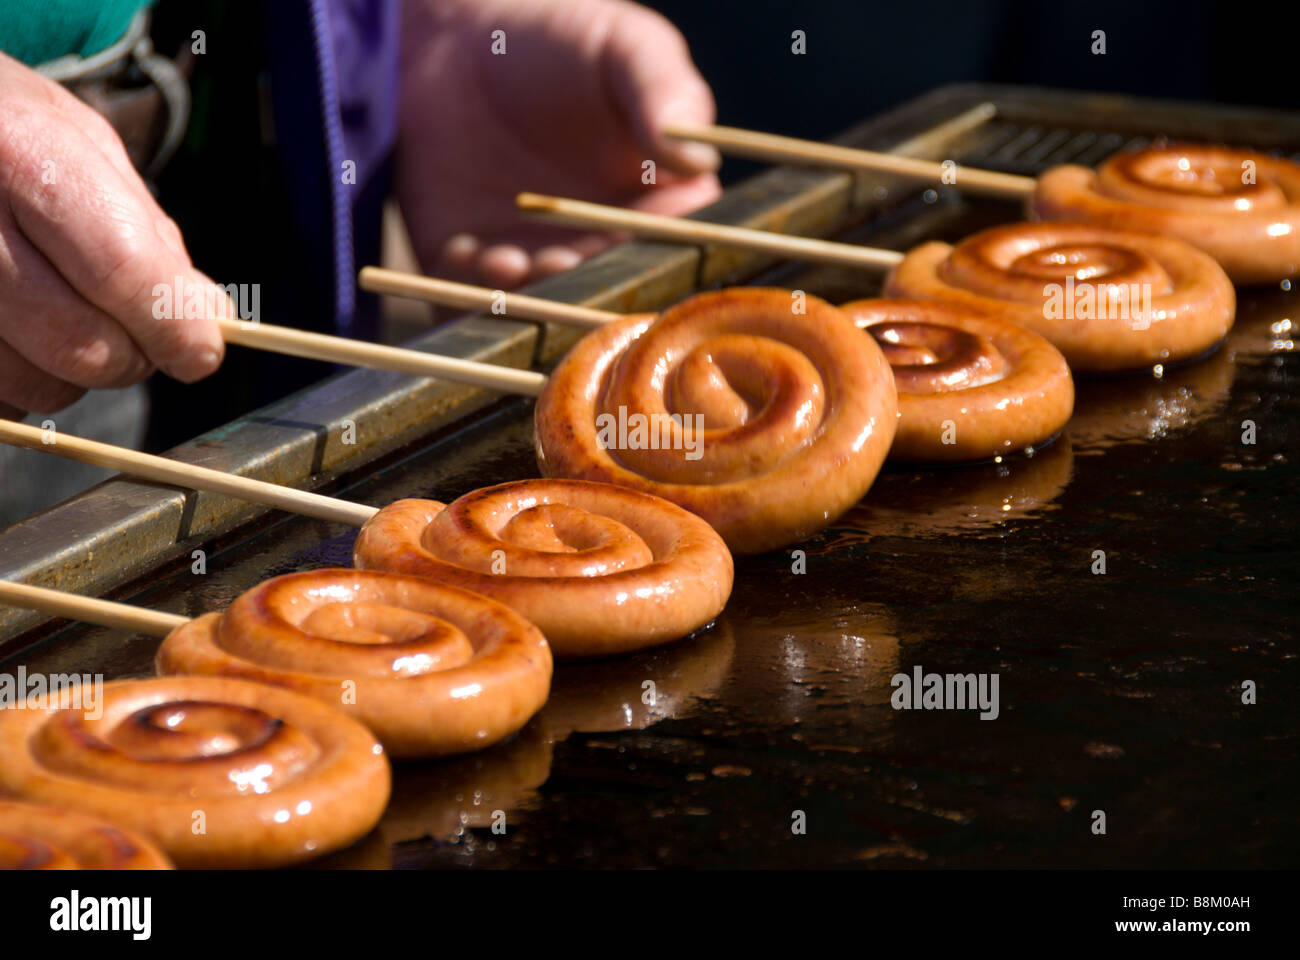 Les saucisses de Francfort depuis longtemps tordu en spirale et un style lollipop grillées sur un bâton pour un festival, Japon Banque D'Images